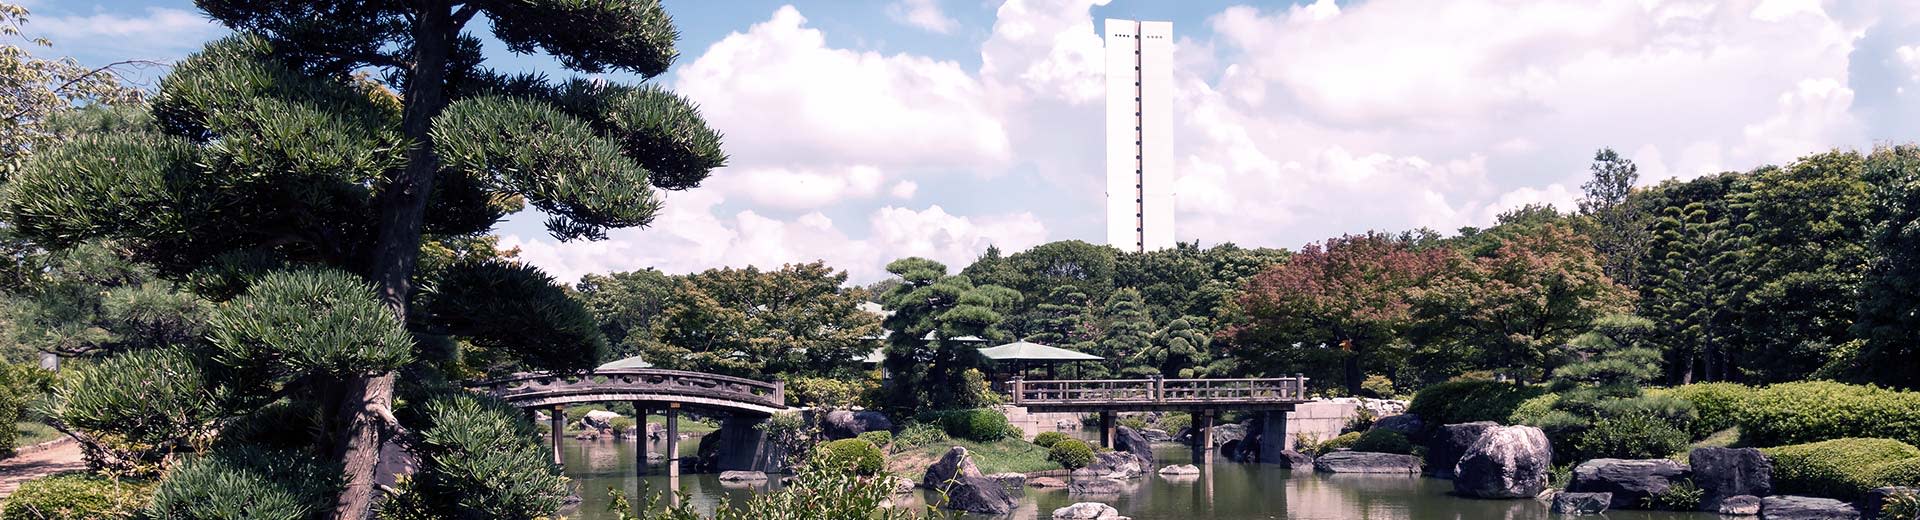 Un jardin japonais vert traditionnel domine l'image, avec un seul bâtiment blanc qui se profile en arrière-plan.		